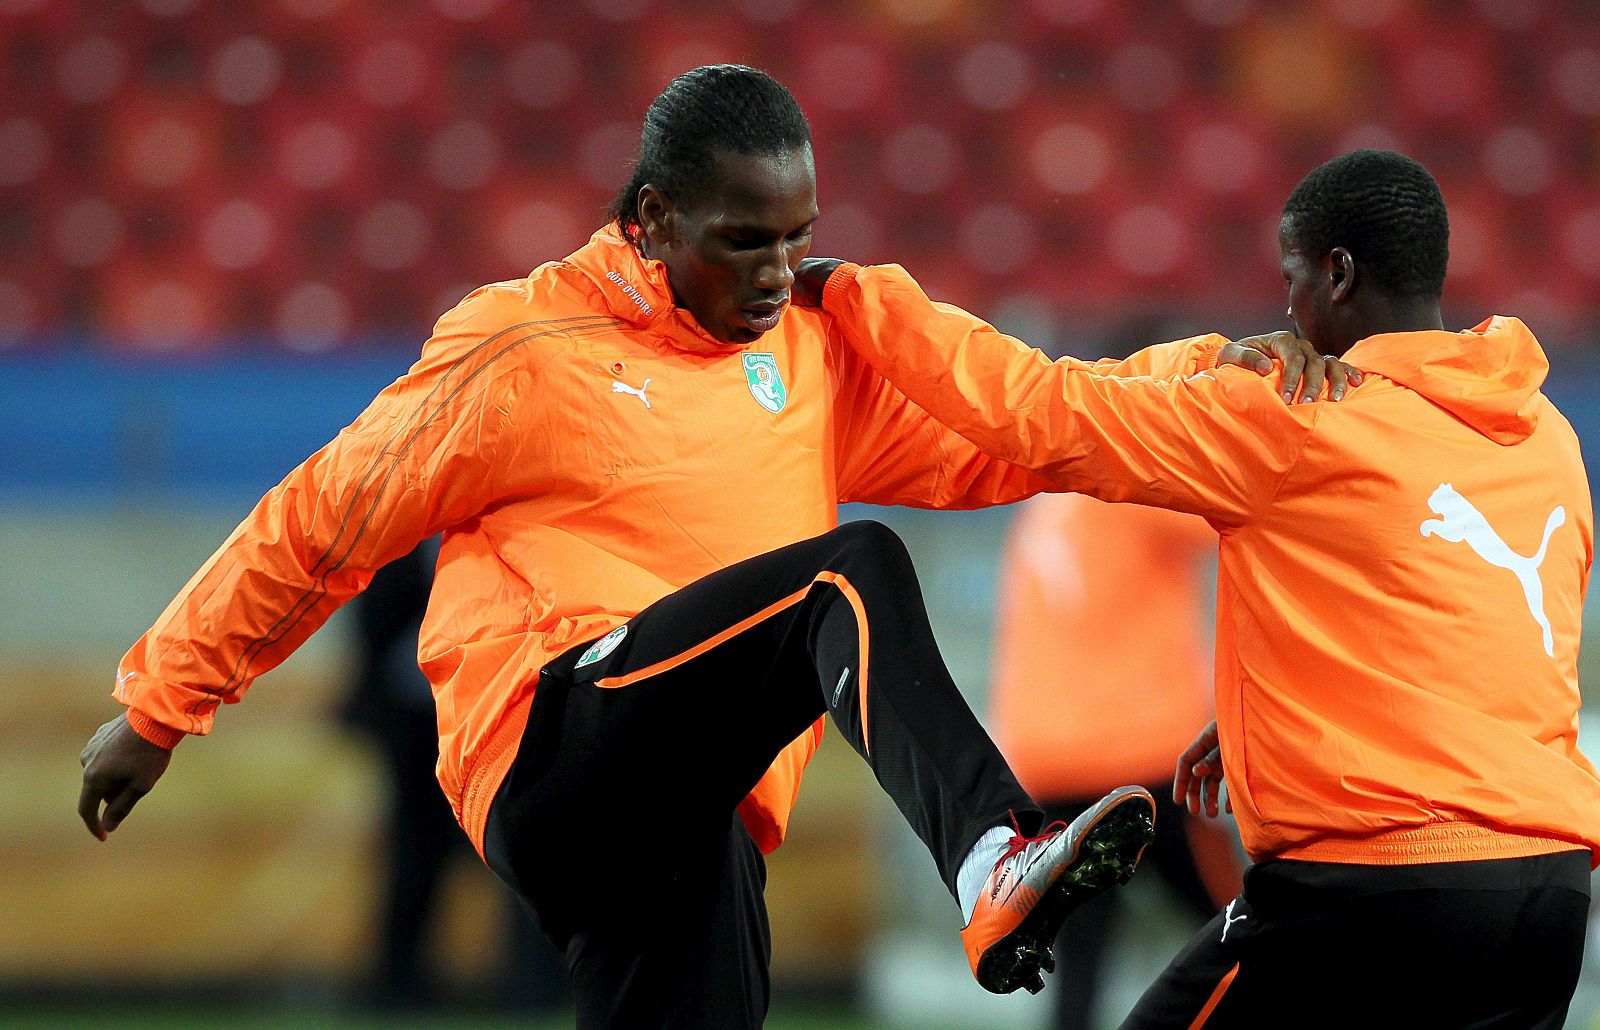 El delantero de Costa de Marfil Didier Drogba (i) y su compañero Aruna Didane (d) se ejercitan durante el entrenamiento